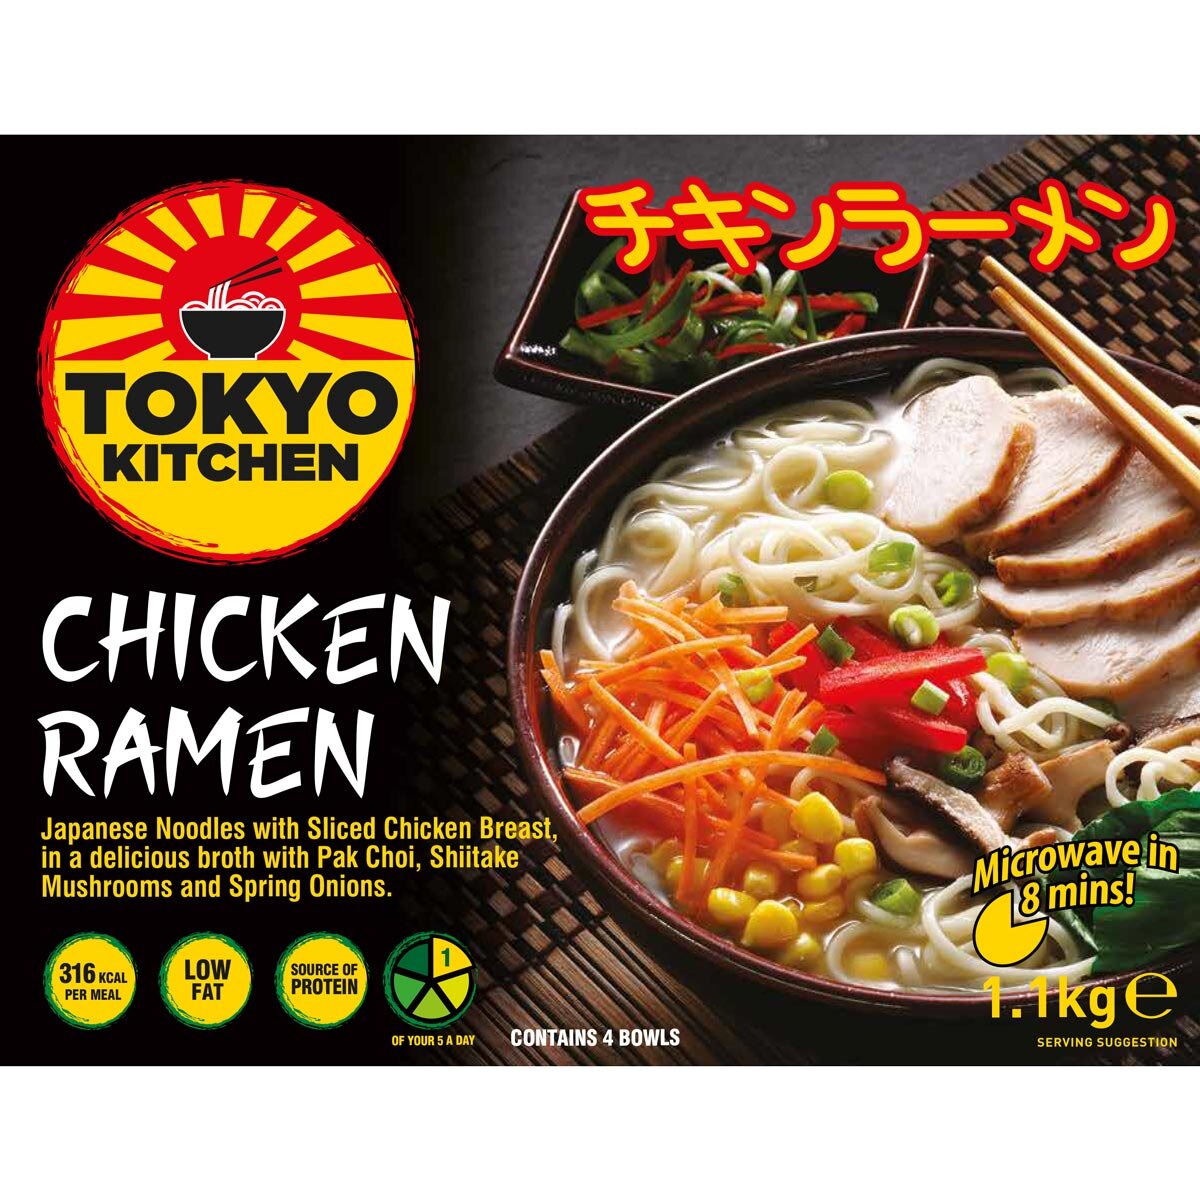 Tokyo Kitchen Chicken Ramen, 4 x 275g Costco UK image